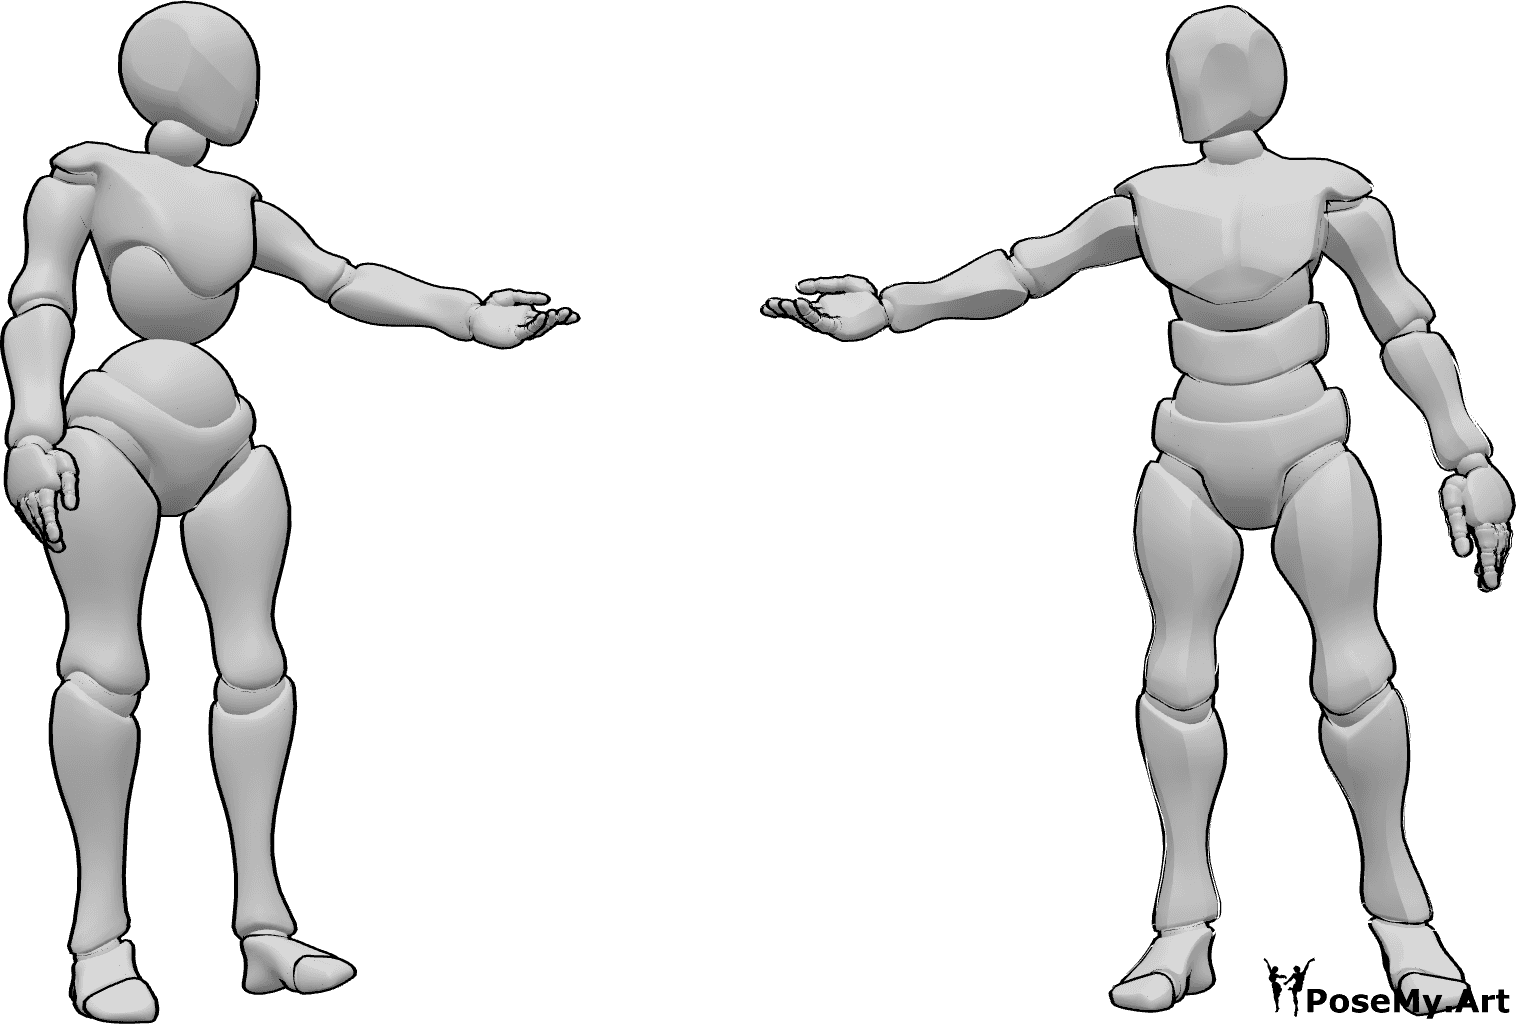 Referência de poses- Pose de alcance de homem e mulher - A mulher e o homem estão de pé, olham um para o outro e estendem as mãos um ao outro